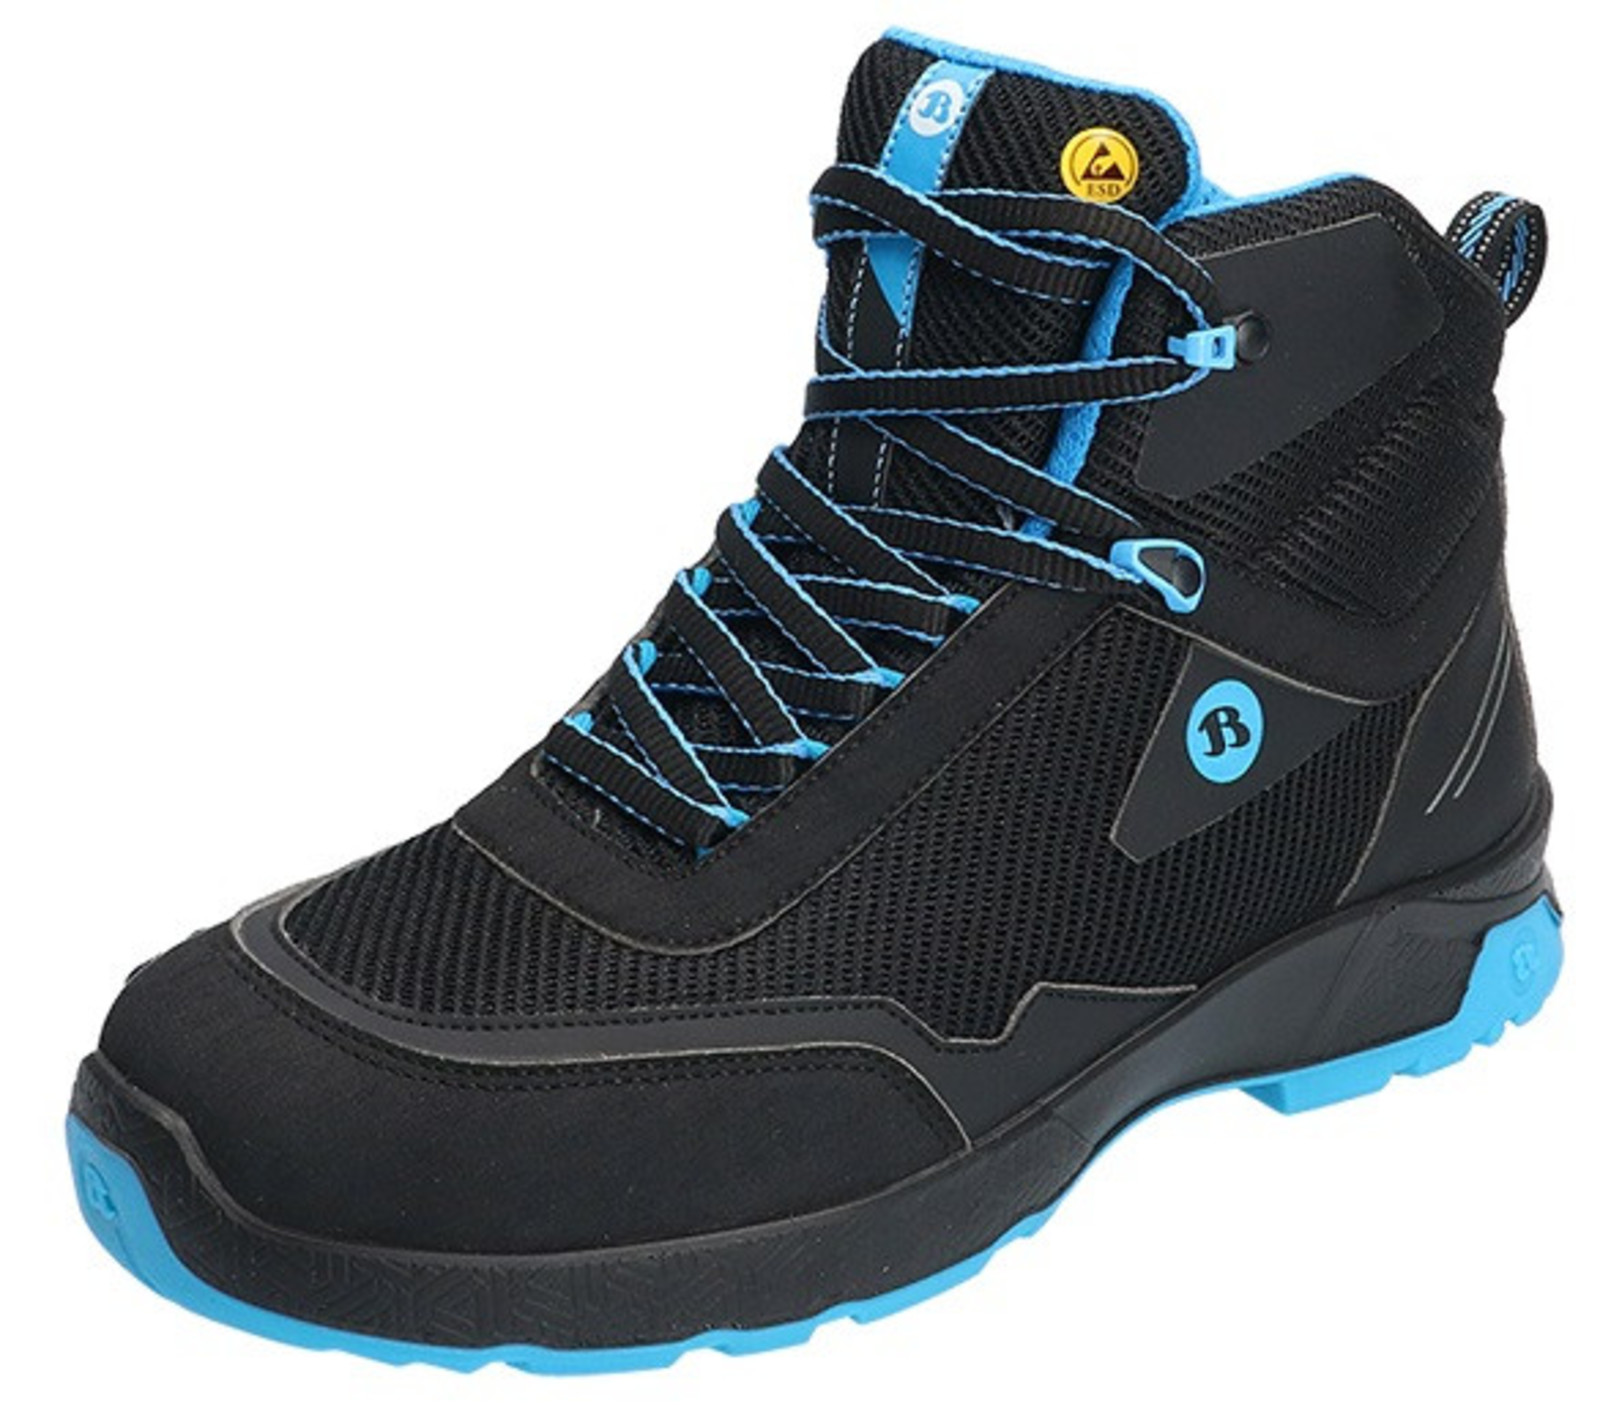 Bezpečnostná členková obuv Baťa Summ One S3 ESD - veľkosť: 38, farba: čierna